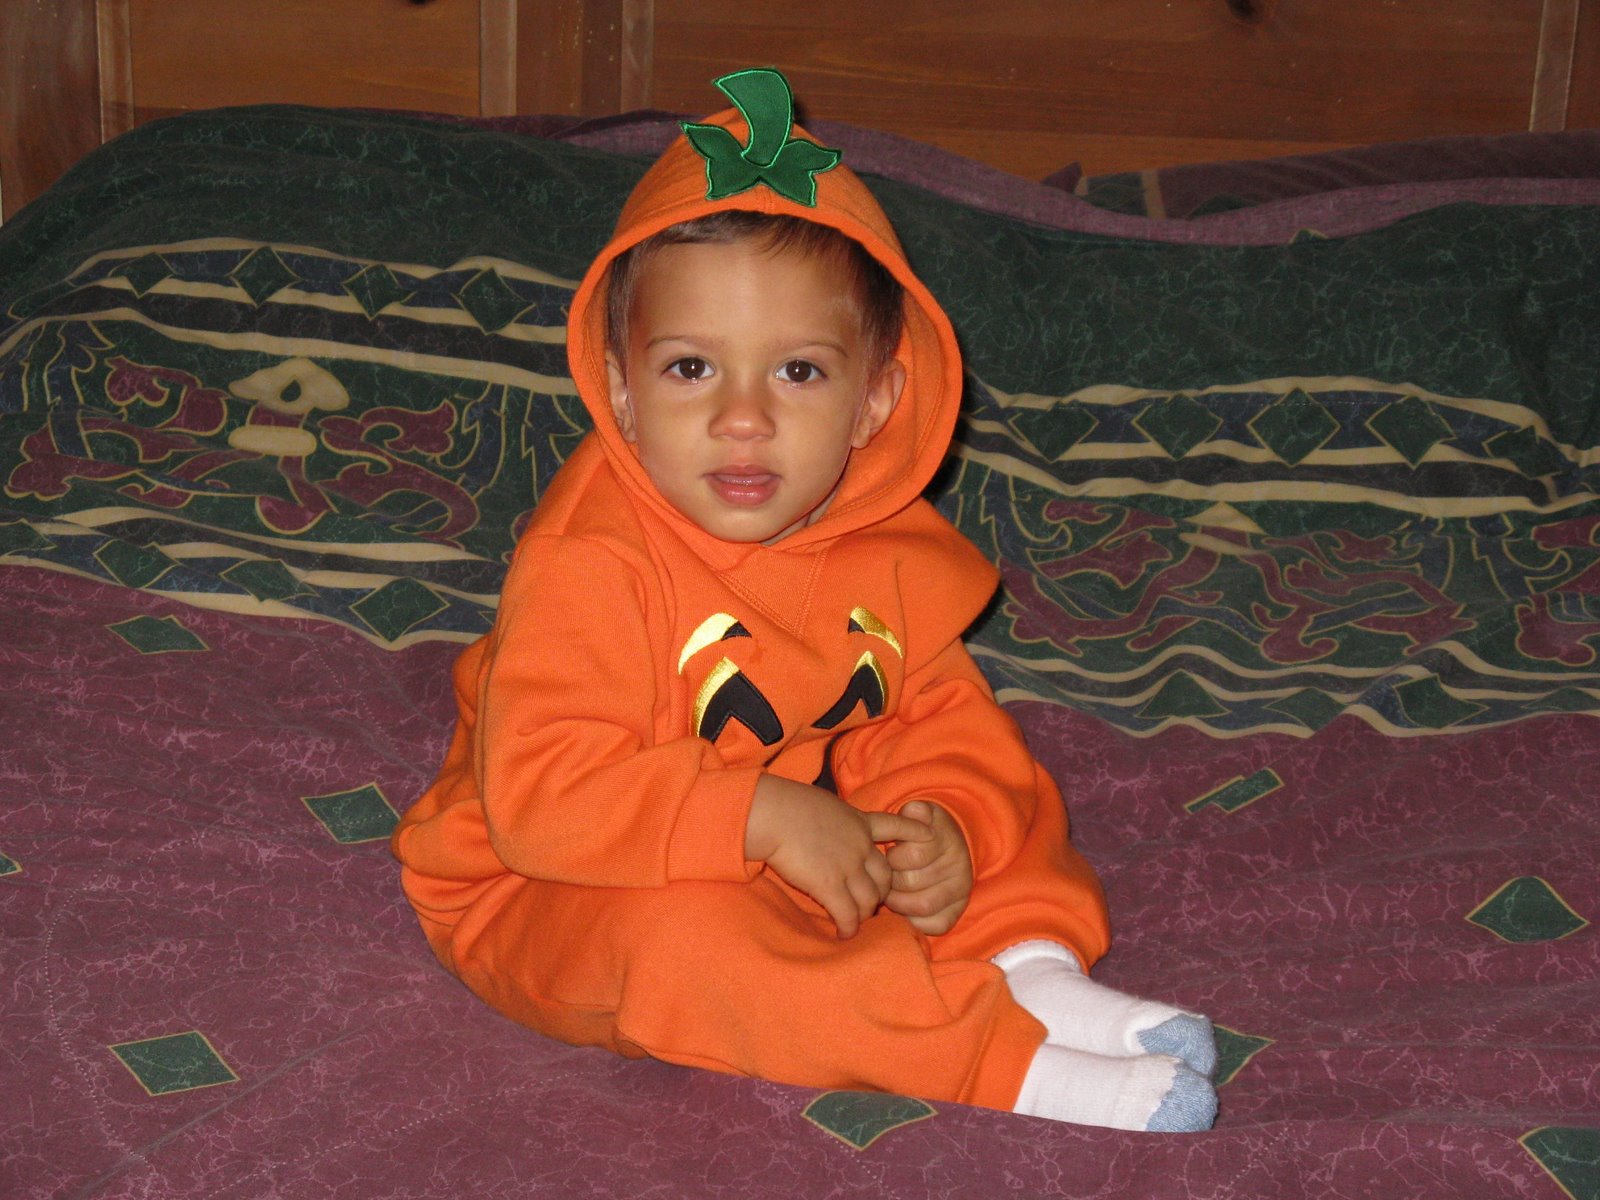 VJ, Our Little Pumpkin